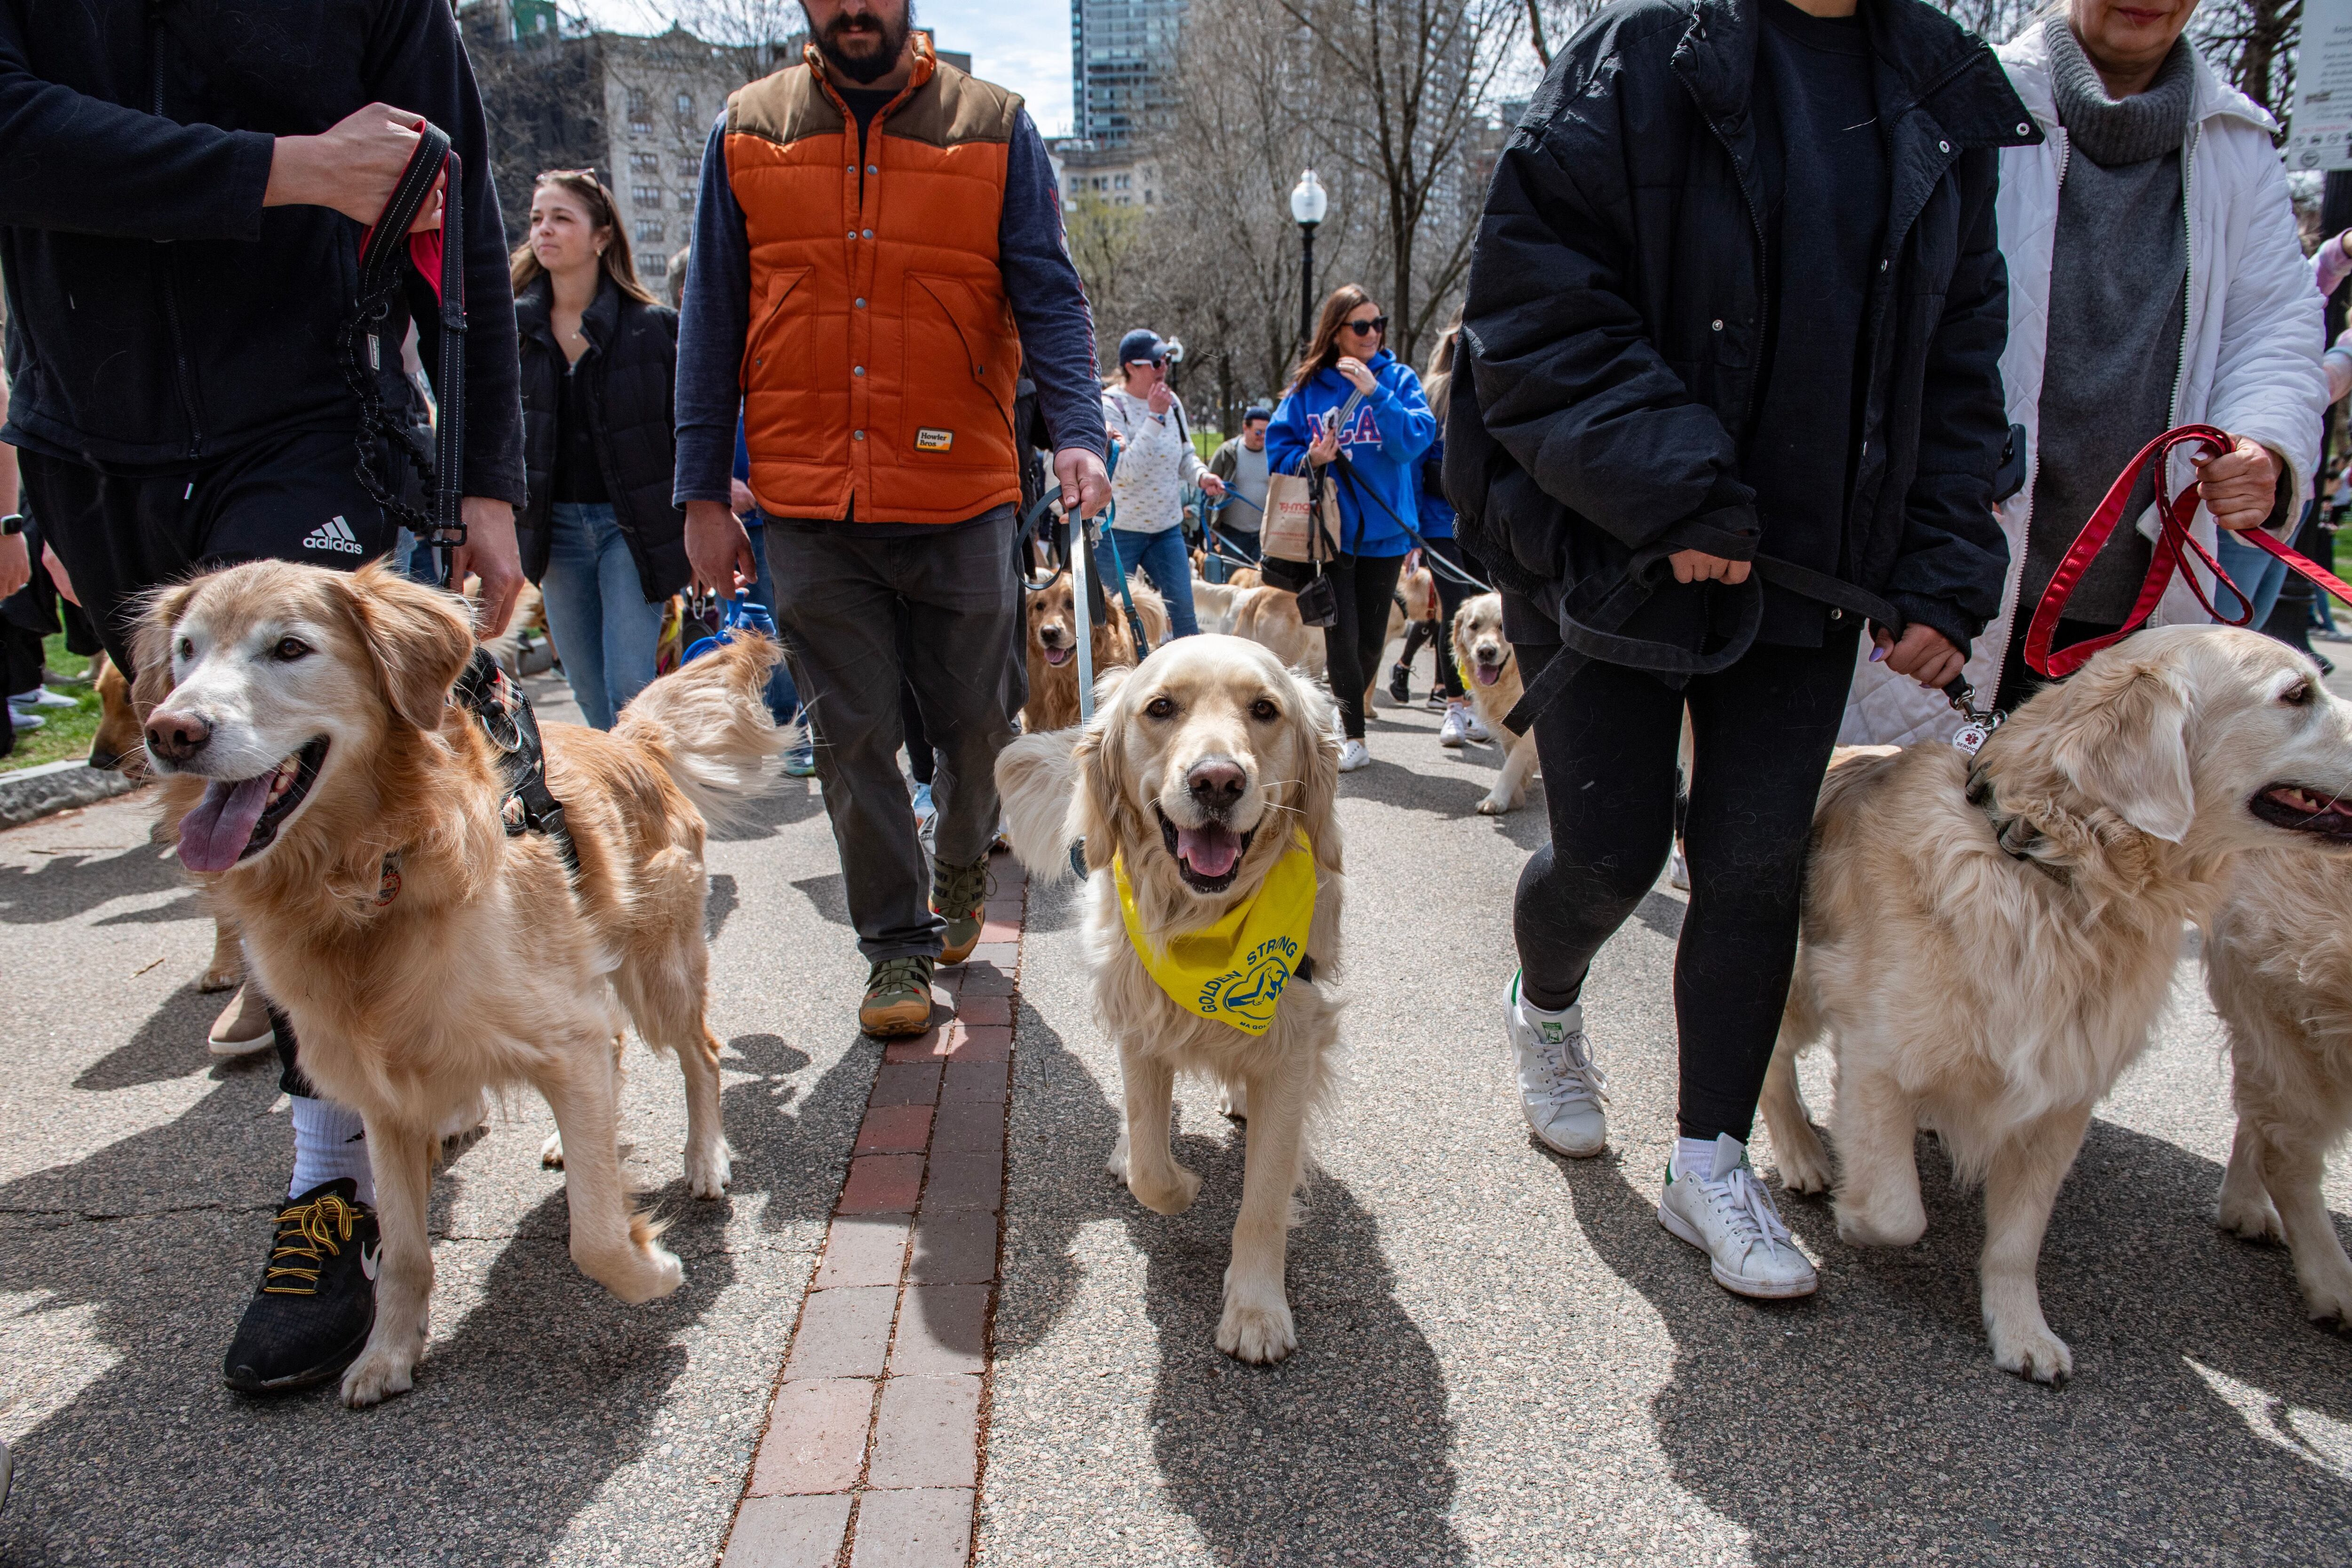 Además de la reunión, los dueños pasearon a sus golden retrievers desde Boston Common hasta el Massachusetts State House. (AFP/Joseph Prezioso).Golden retrievers, perros, razas de perros, animales, mascotas, Boston Marathon, Boston, Massachusetts, noticias de animales, noticias de mascotas.